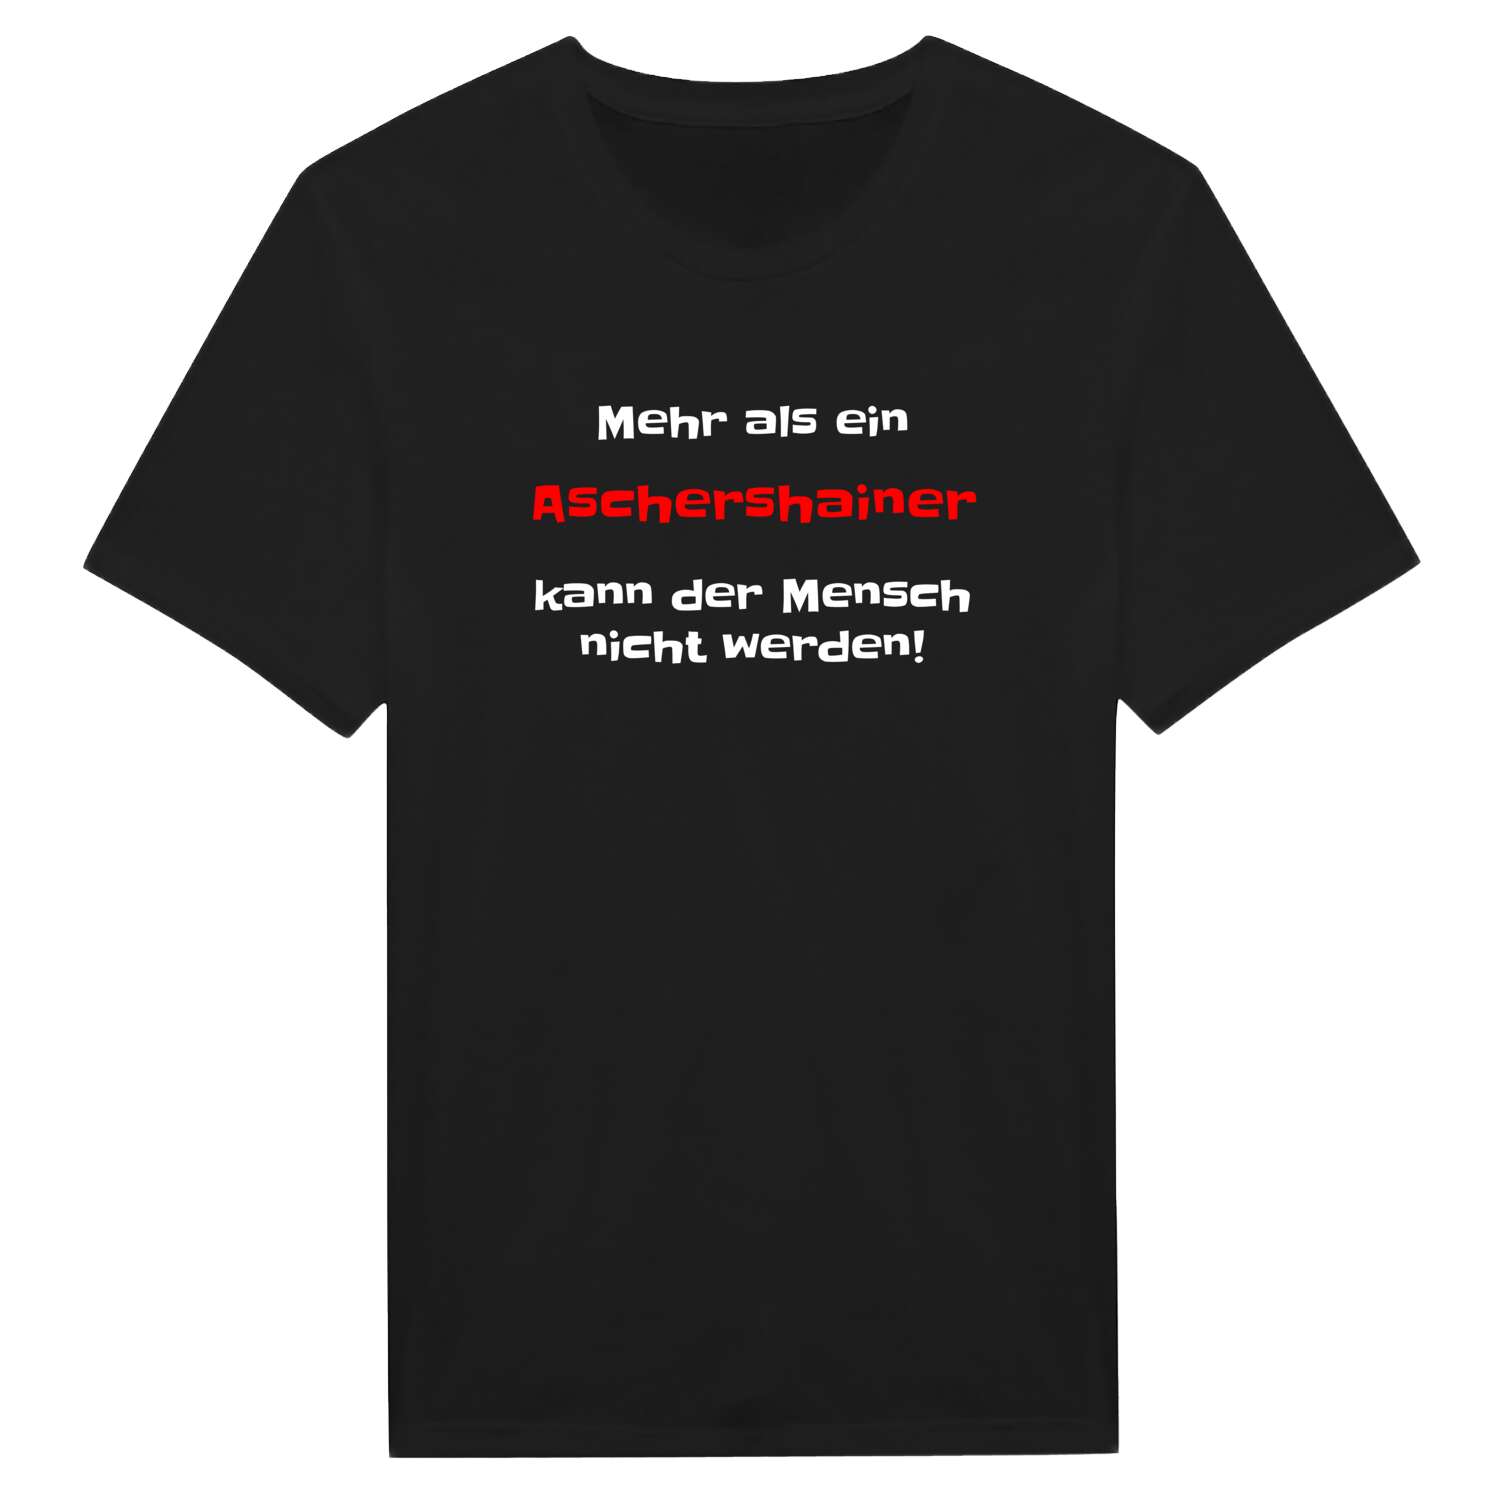 Aschershain T-Shirt »Mehr als ein«